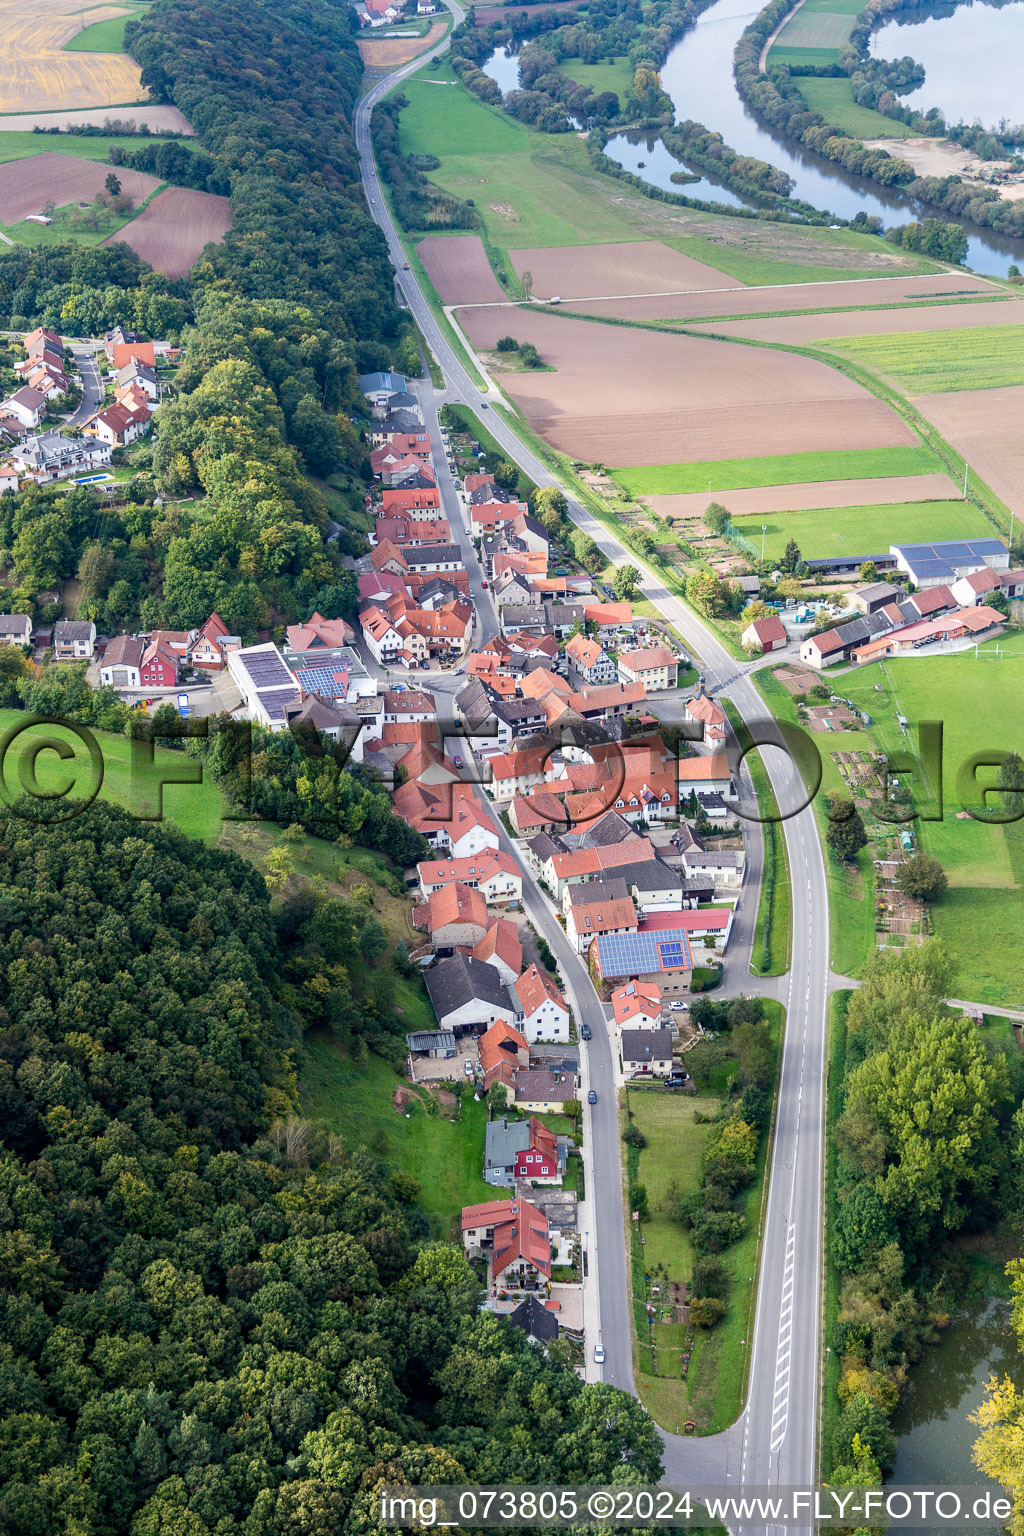 Luftbild von Dorf - Ansicht am Rande von landwirtschaftlichen Feldern und Nutzflächen im Ortsteil Roßstadt in Eltmann im Bundesland Bayern, Deutschland